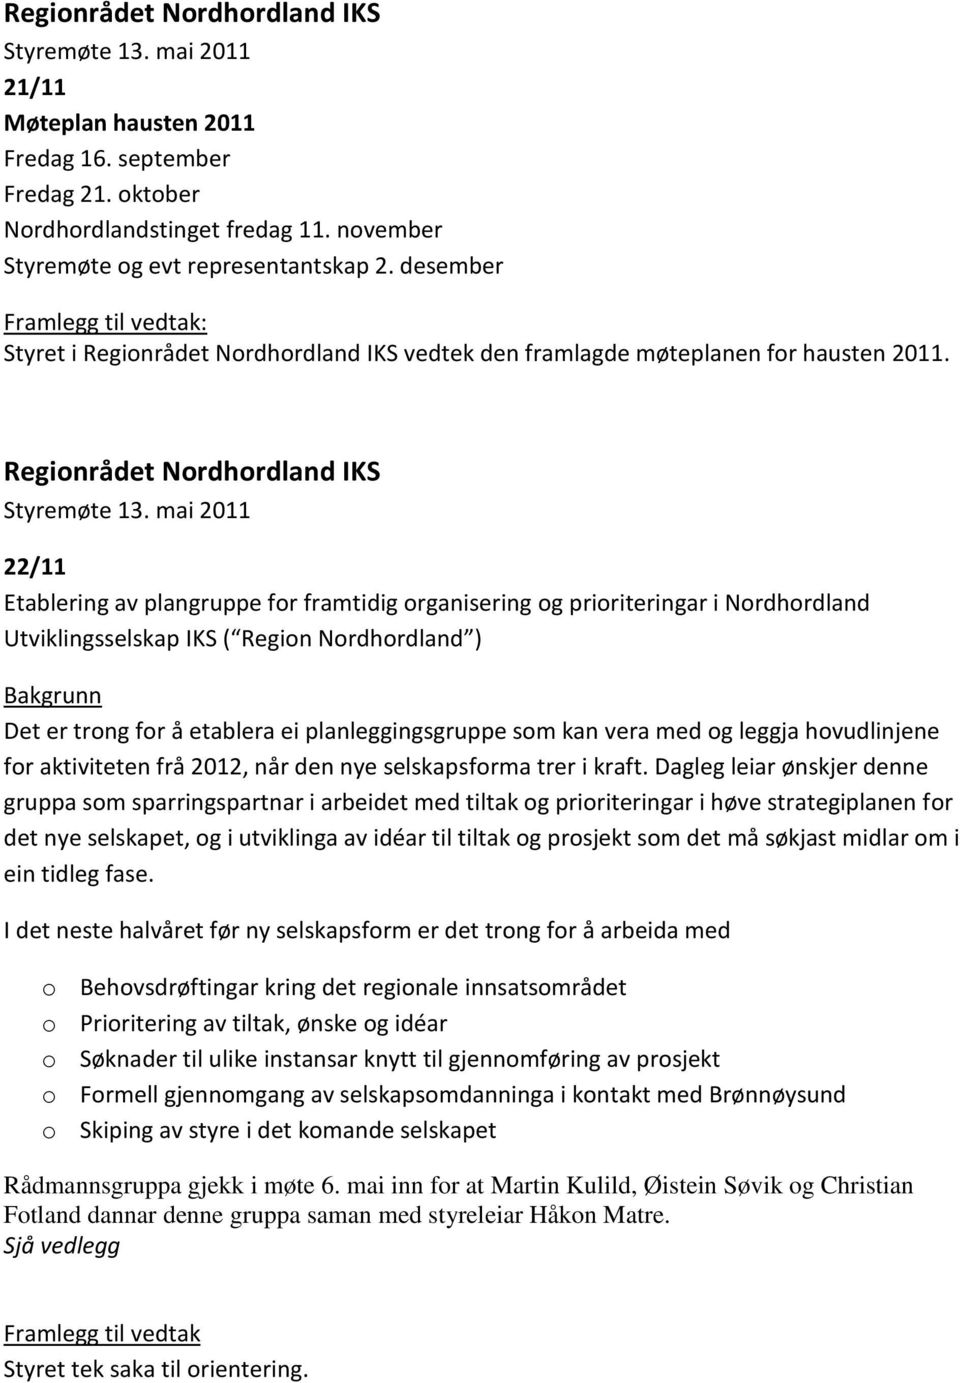 Regionrådet Nordhordland IKS 22/11 Etablering av plangruppe for framtidig organisering og prioriteringar i Nordhordland Utviklingsselskap IKS ( Region Nordhordland ) Bakgrunn Det er trong for å